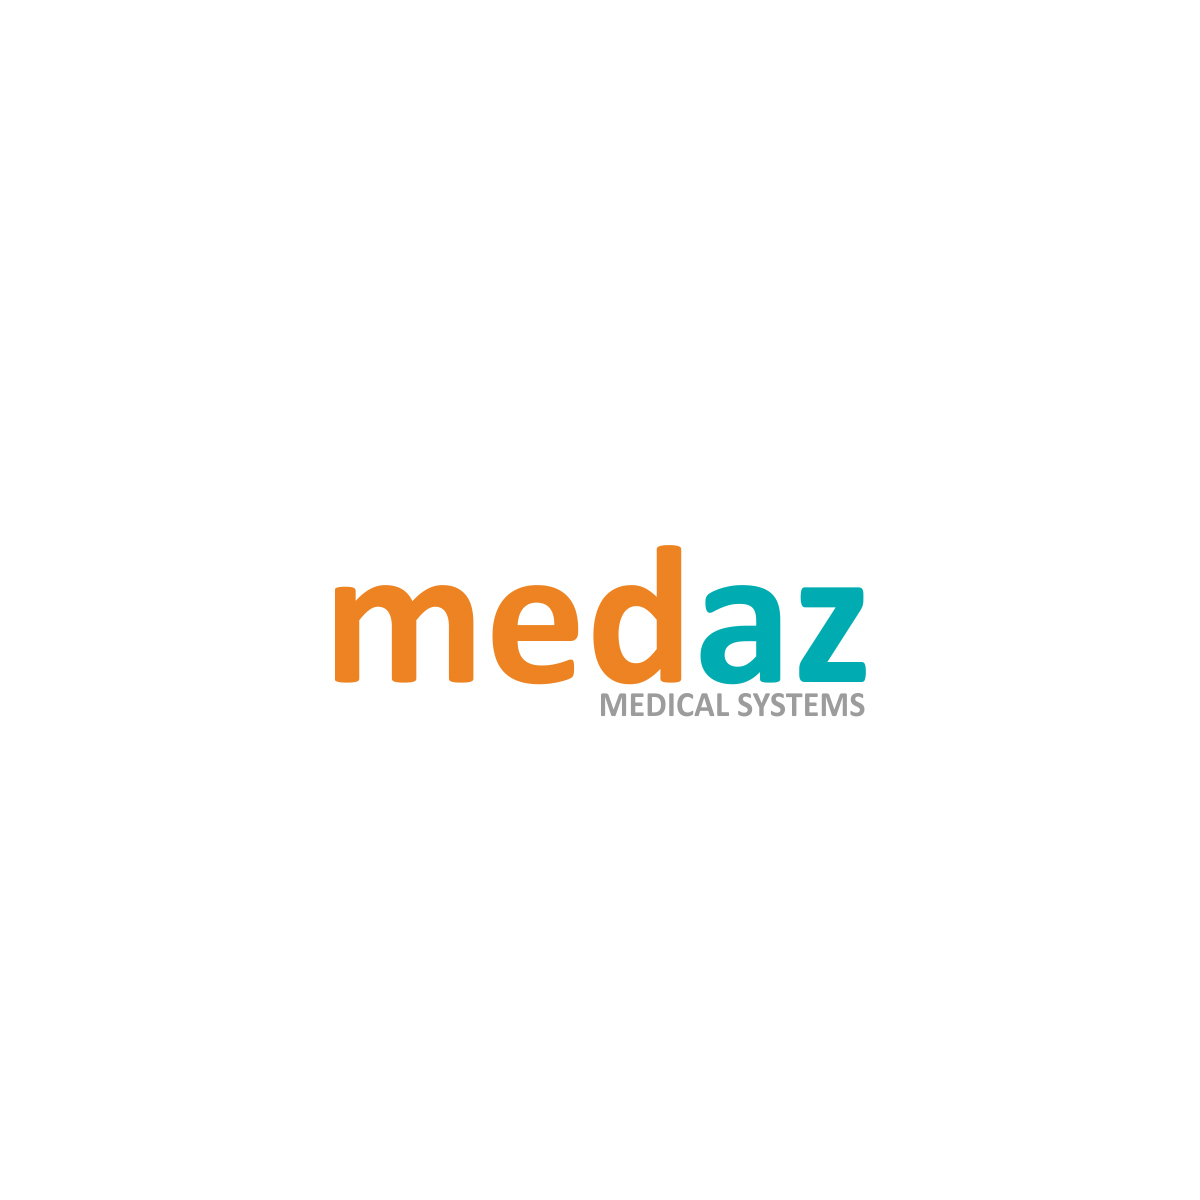 Medaz